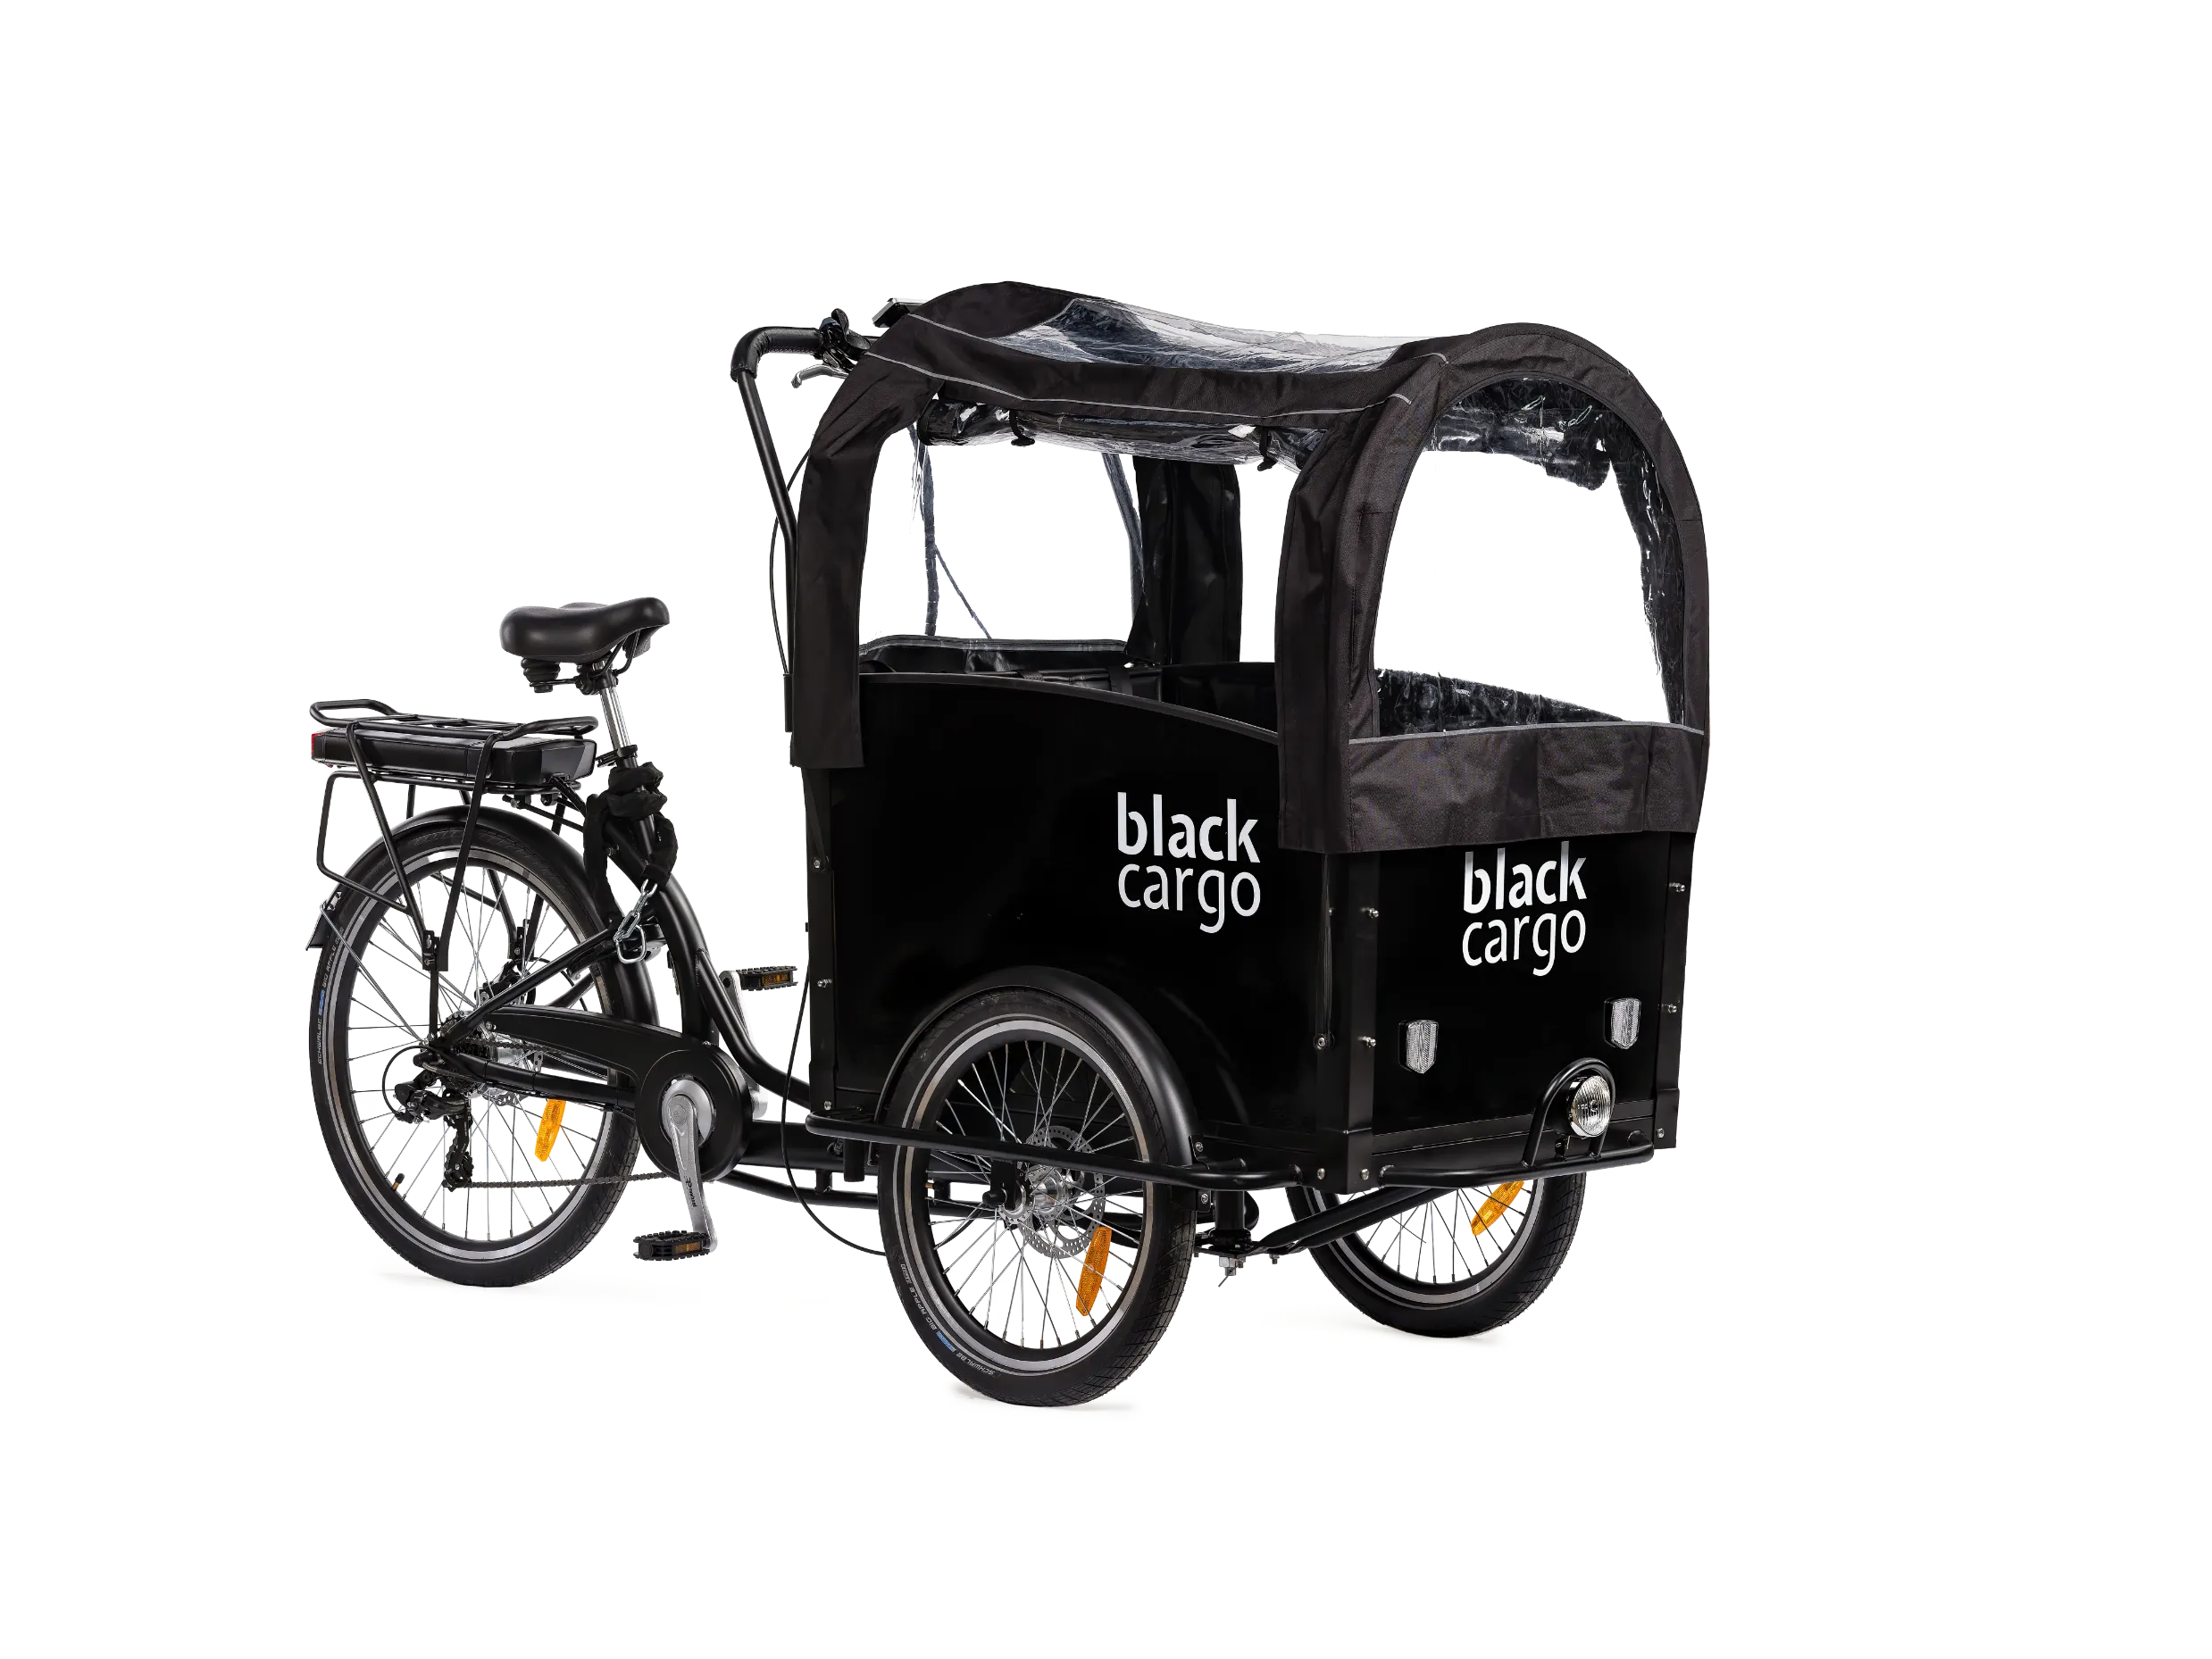 Le support de Maxi-Cosi pour vélo cargo Babboe dispo sur